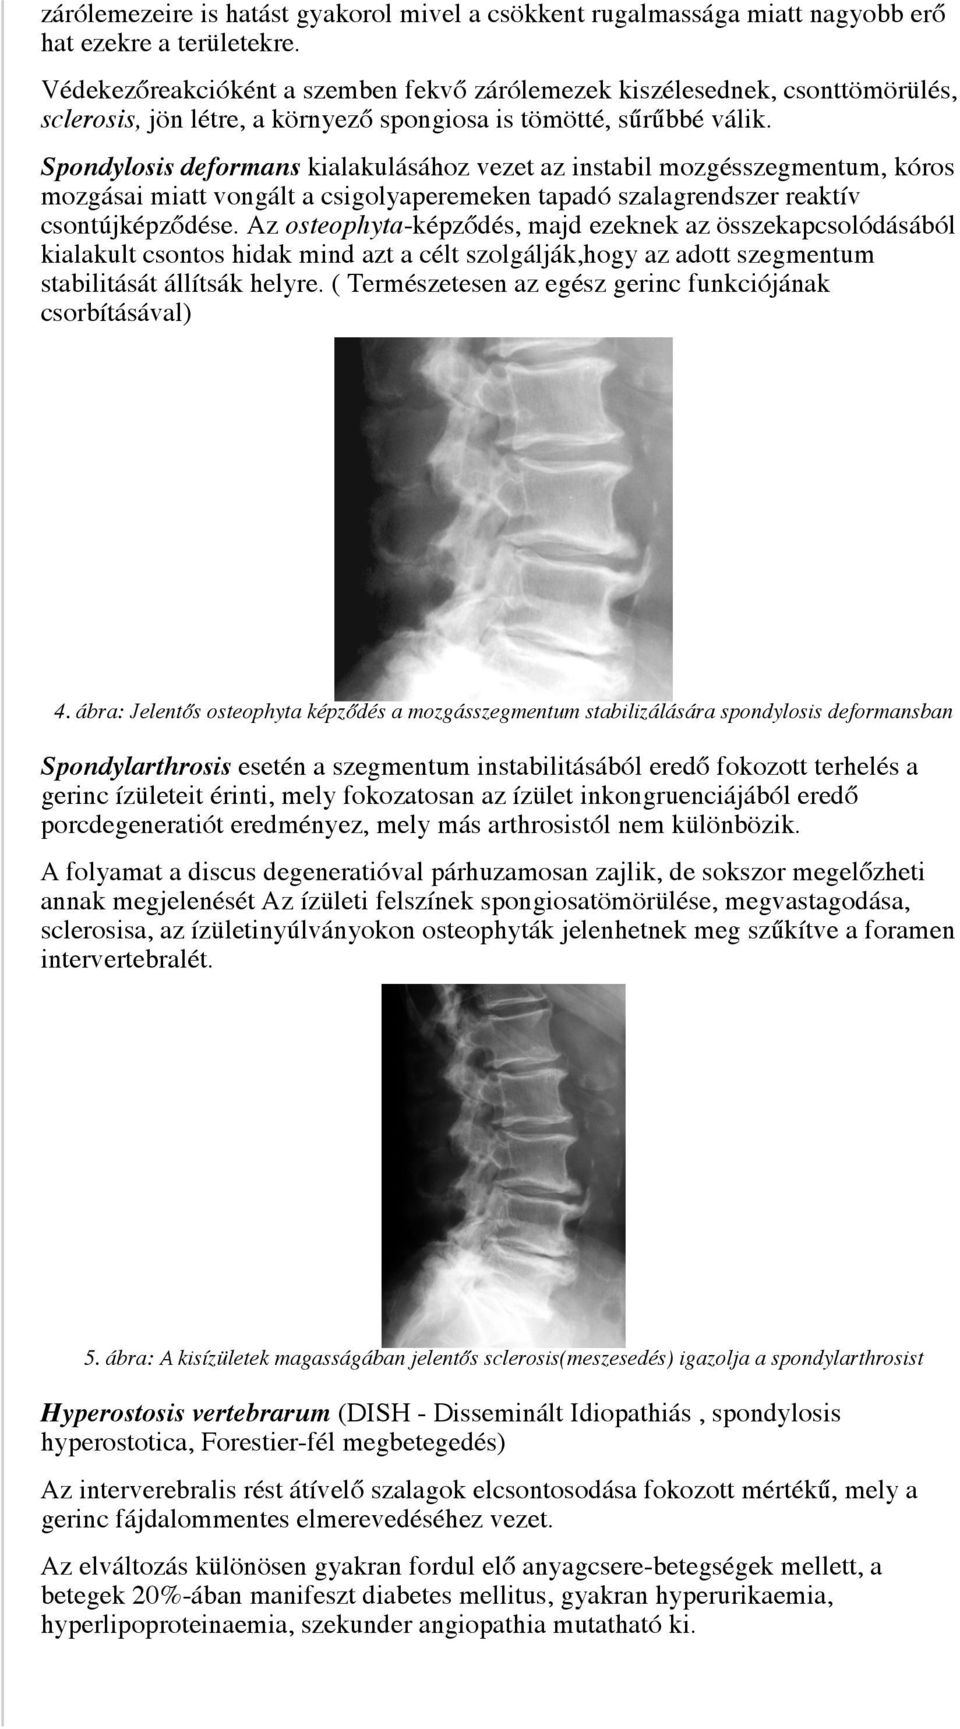 Spondylosis deformans kialakulásához vezet az instabil mozgésszegmentum, kóros mozgásai miatt vongált a csigolyaperemeken tapadó szalagrendszer reaktív csontújképződése.